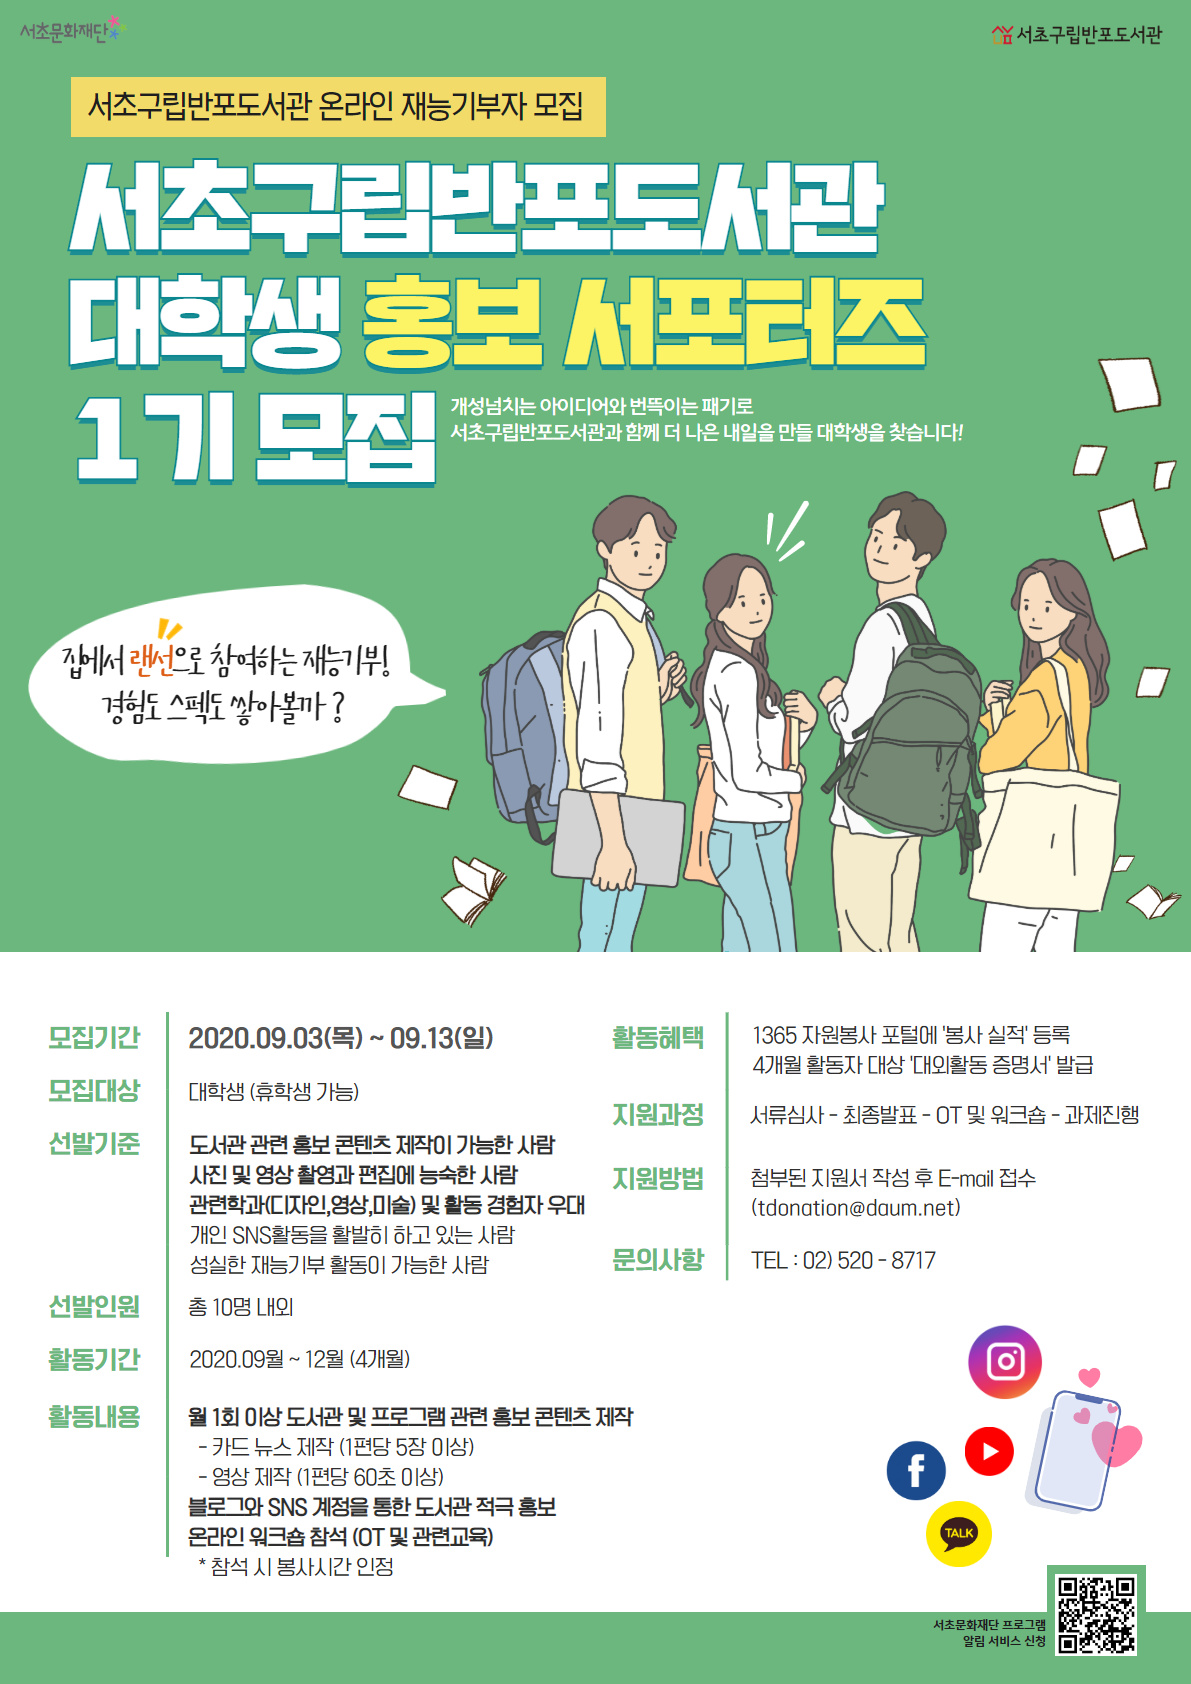 서초구립반포도서관 대학생 홍보 서포터즈-1기 모집 (재능기부자 모집)